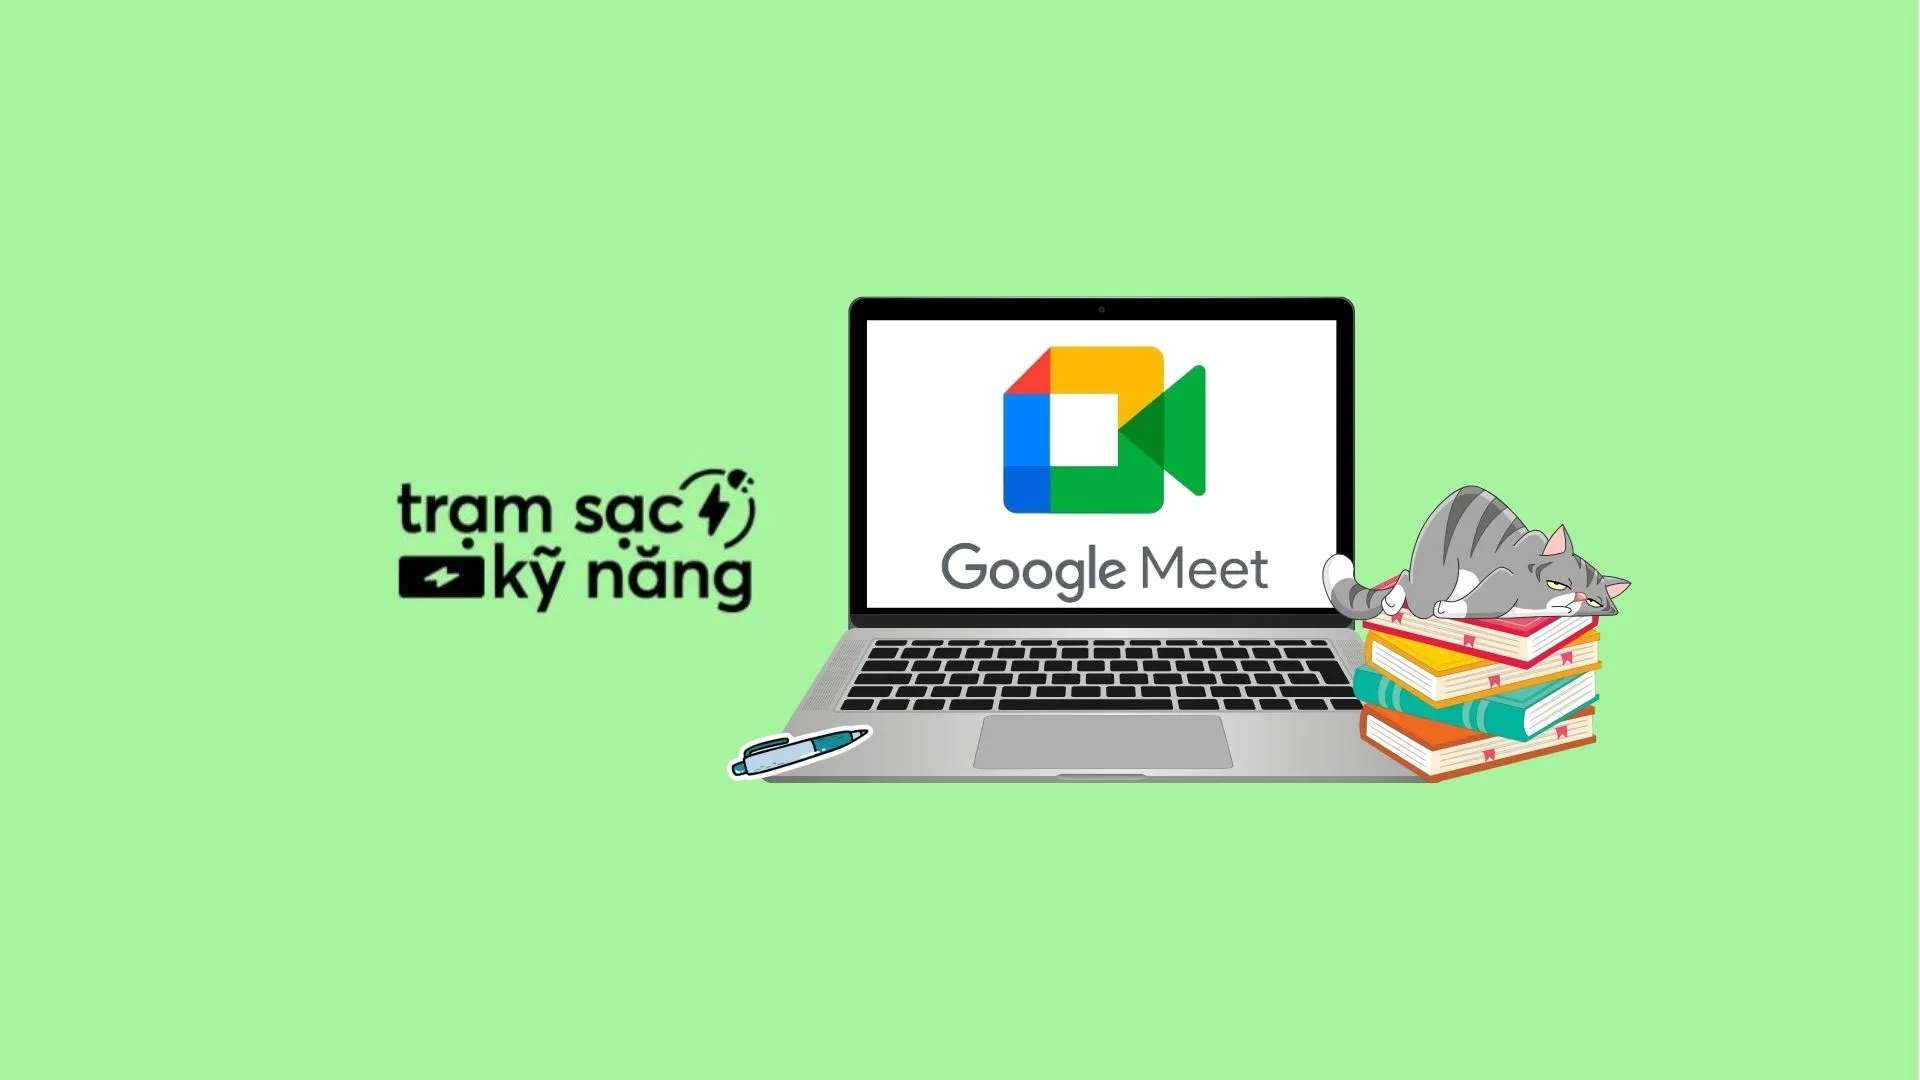 Google Meet thêm hình nền ảo 360 độ trên thiết bị di động